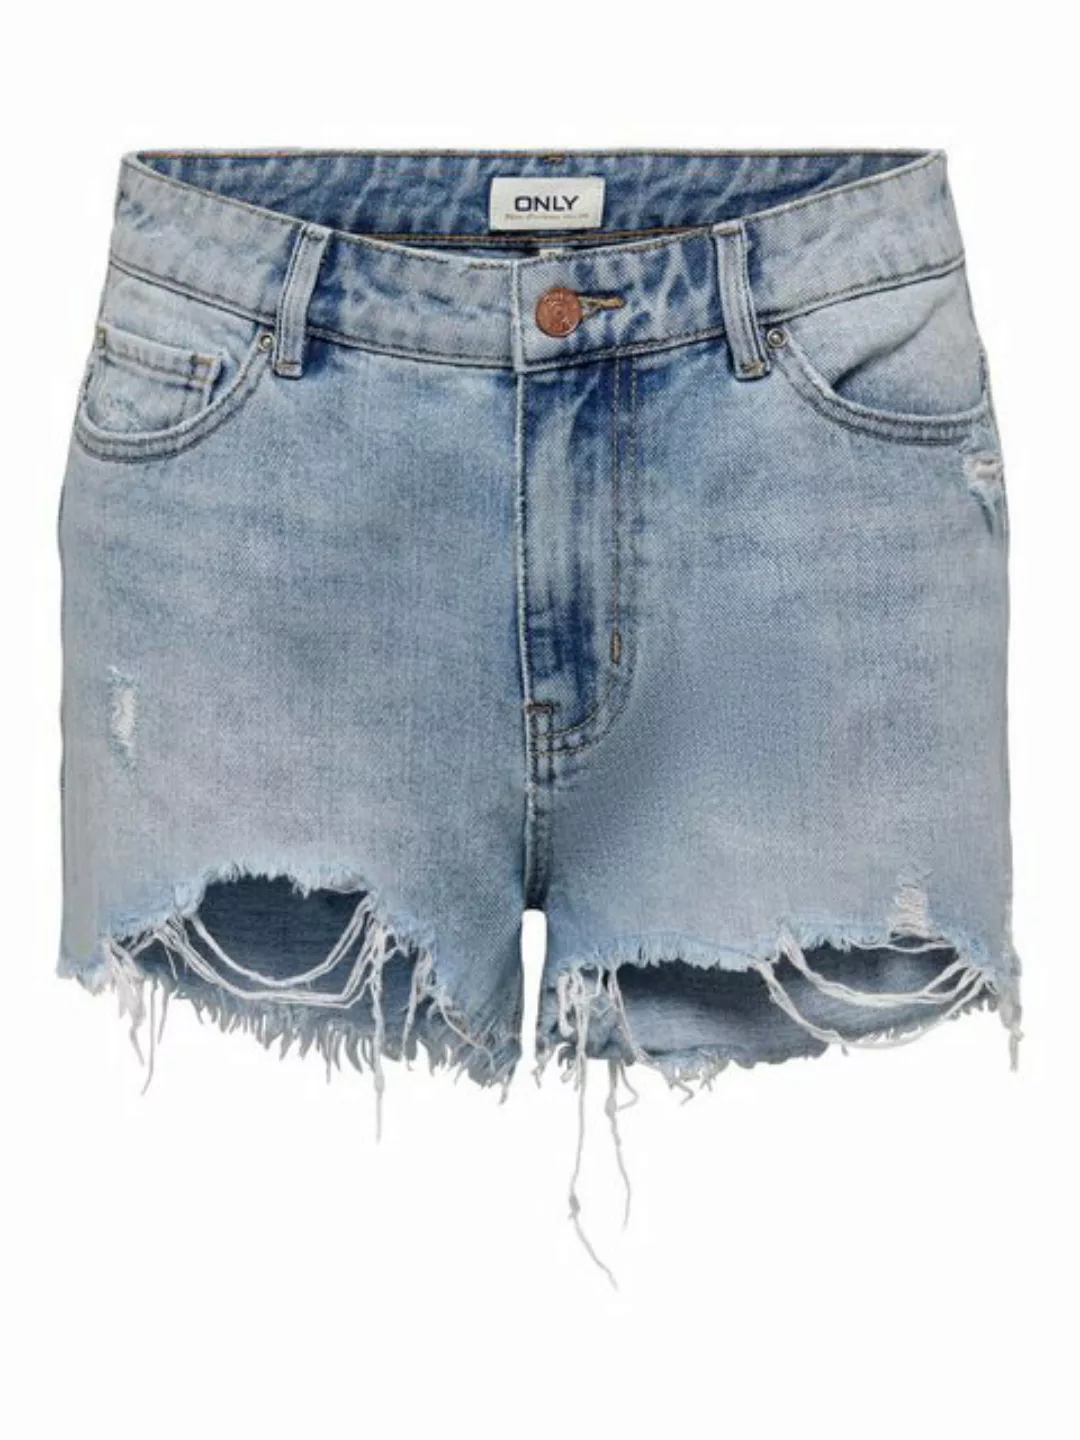 ONLY Jeansshorts Kurze High Waist Denim Jeans Shorts Destroyed Design ONLPA günstig online kaufen